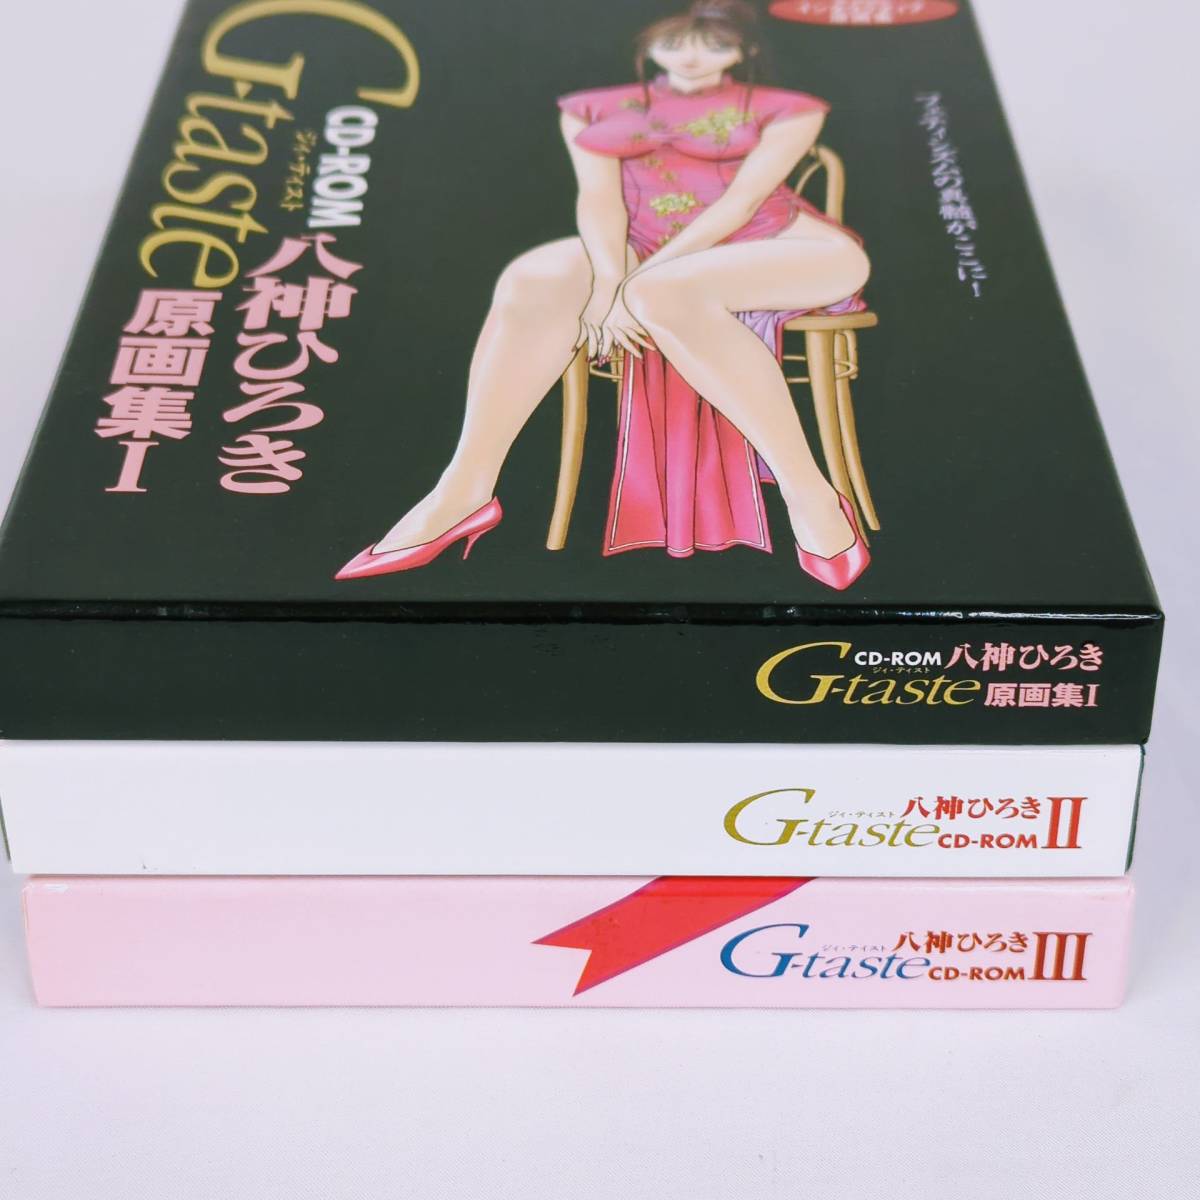 八神ひろき G-taste 原画集 Ⅰ・Ⅱ・Ⅲ 3点セット CD-ROM_画像8